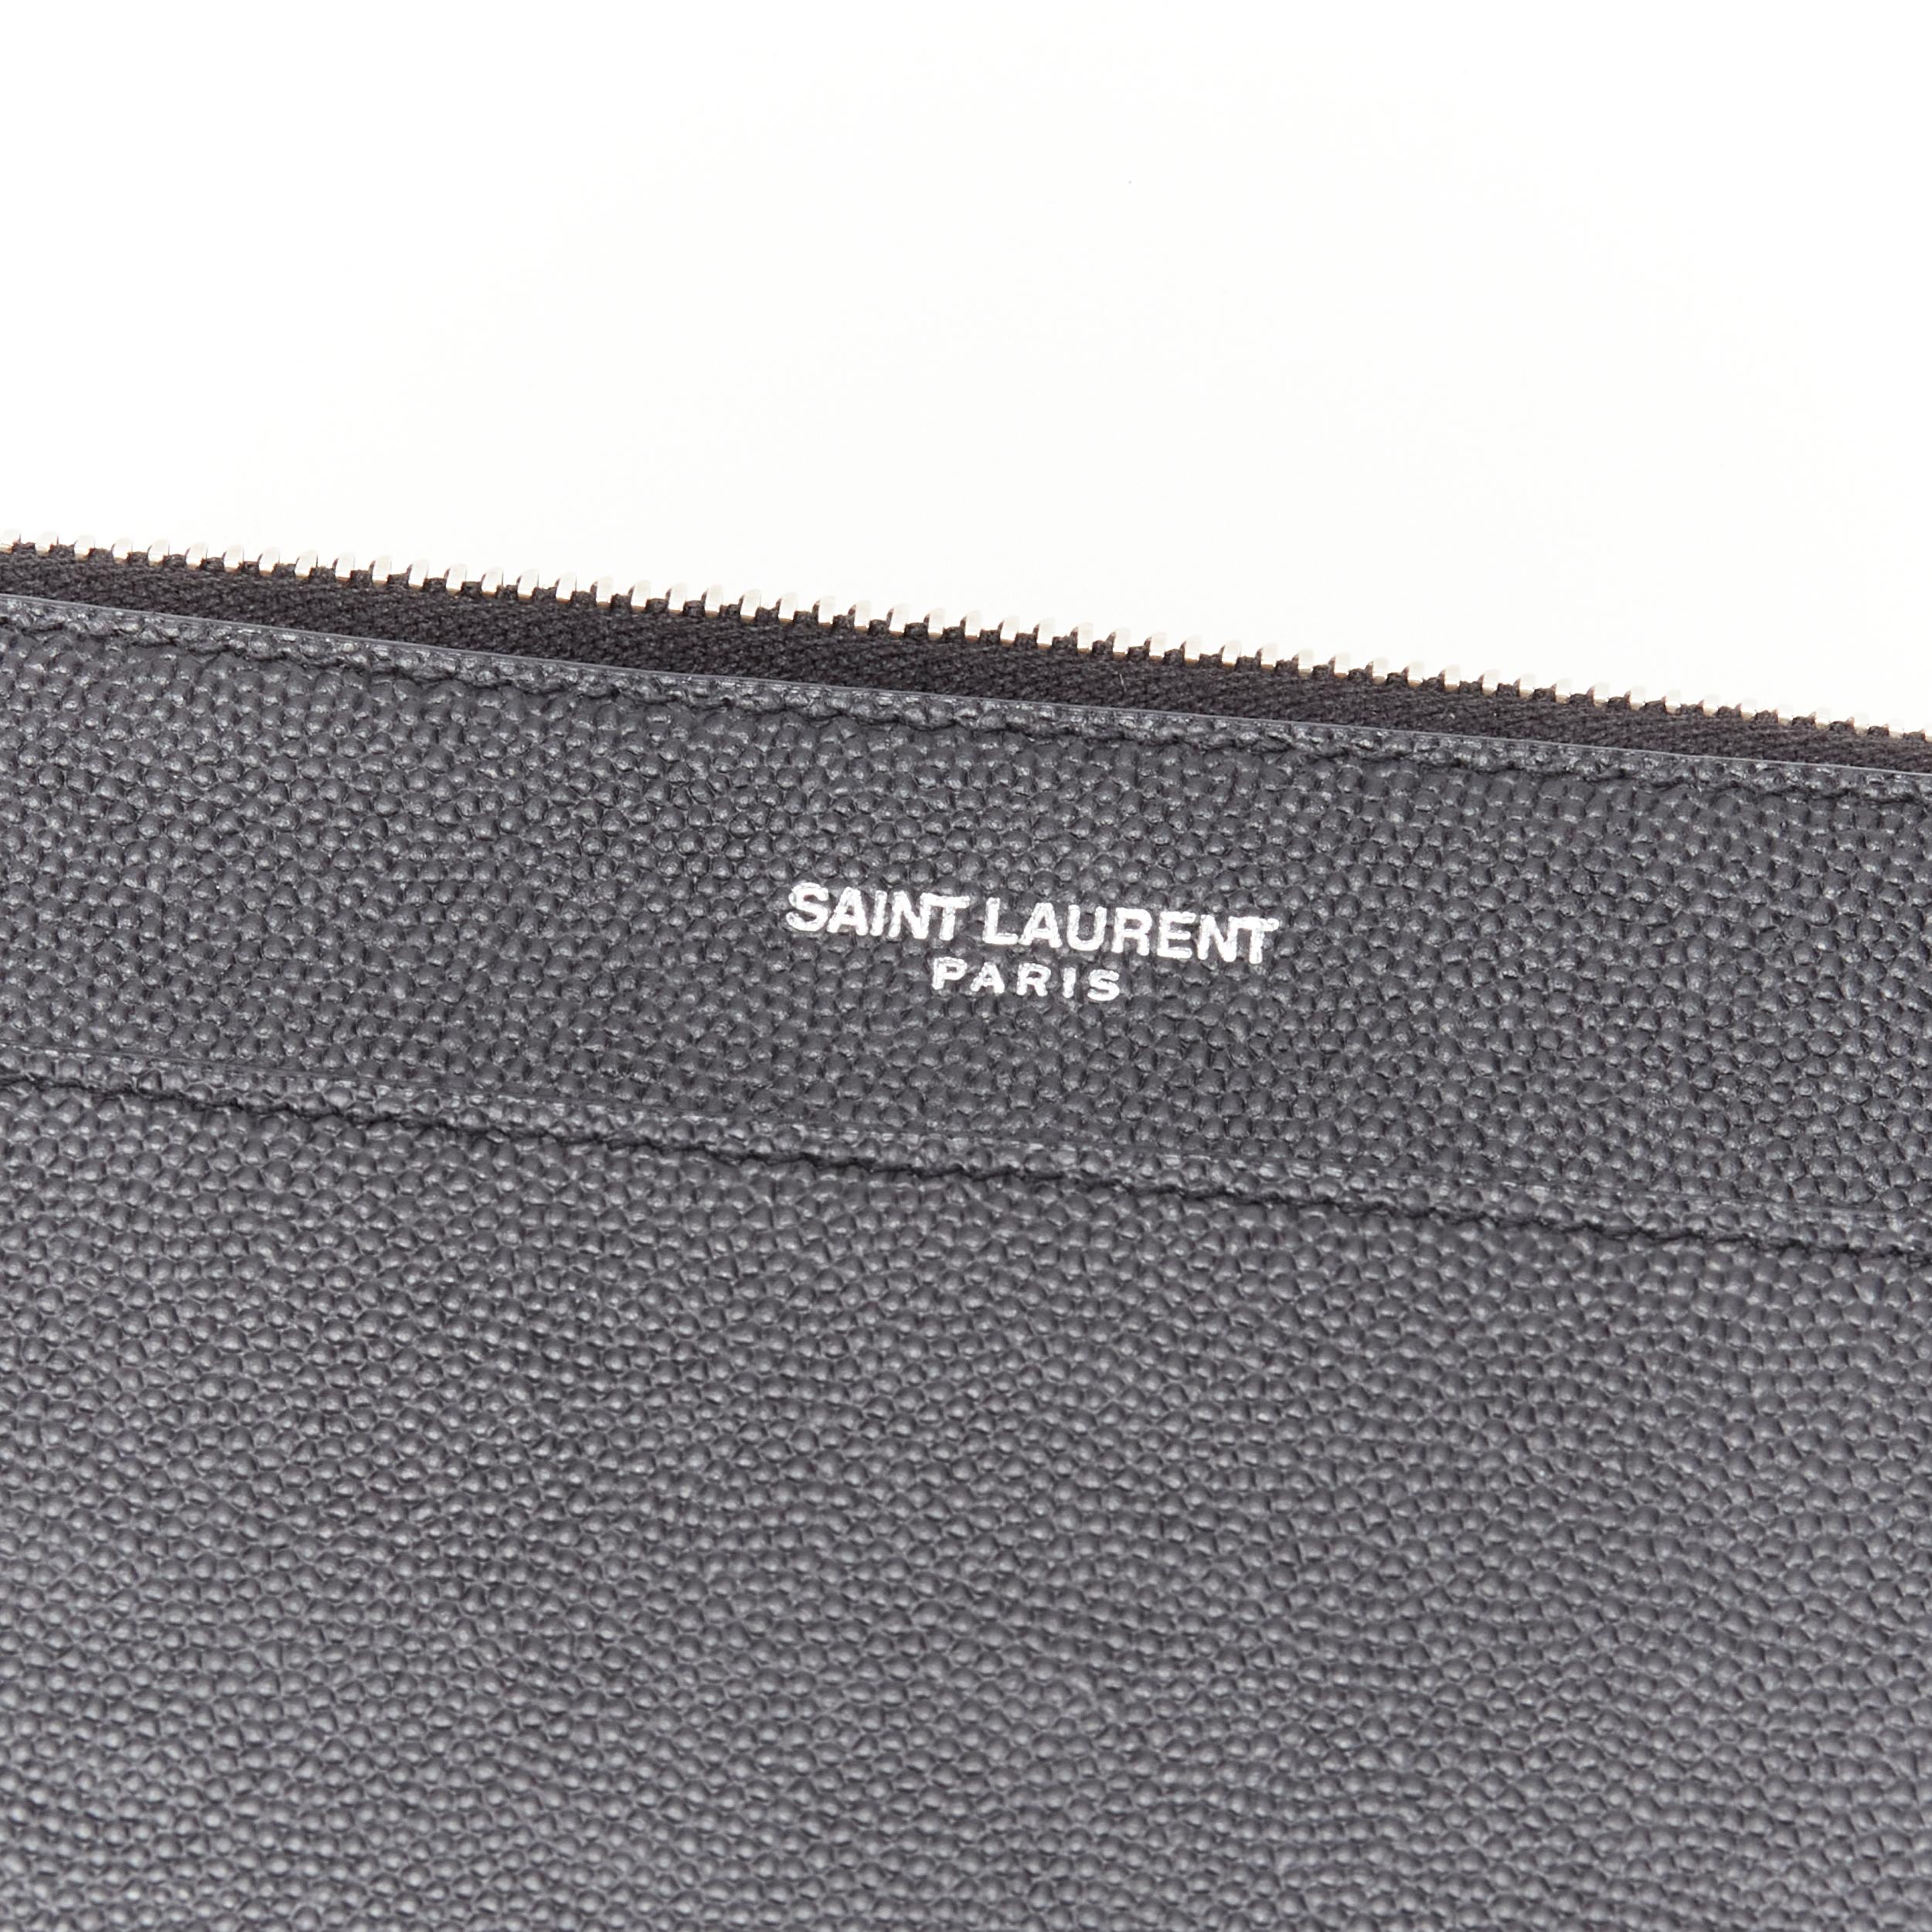 Men's new SAINT LAURENT Catherine black Grain de Poudre leather clutch bag